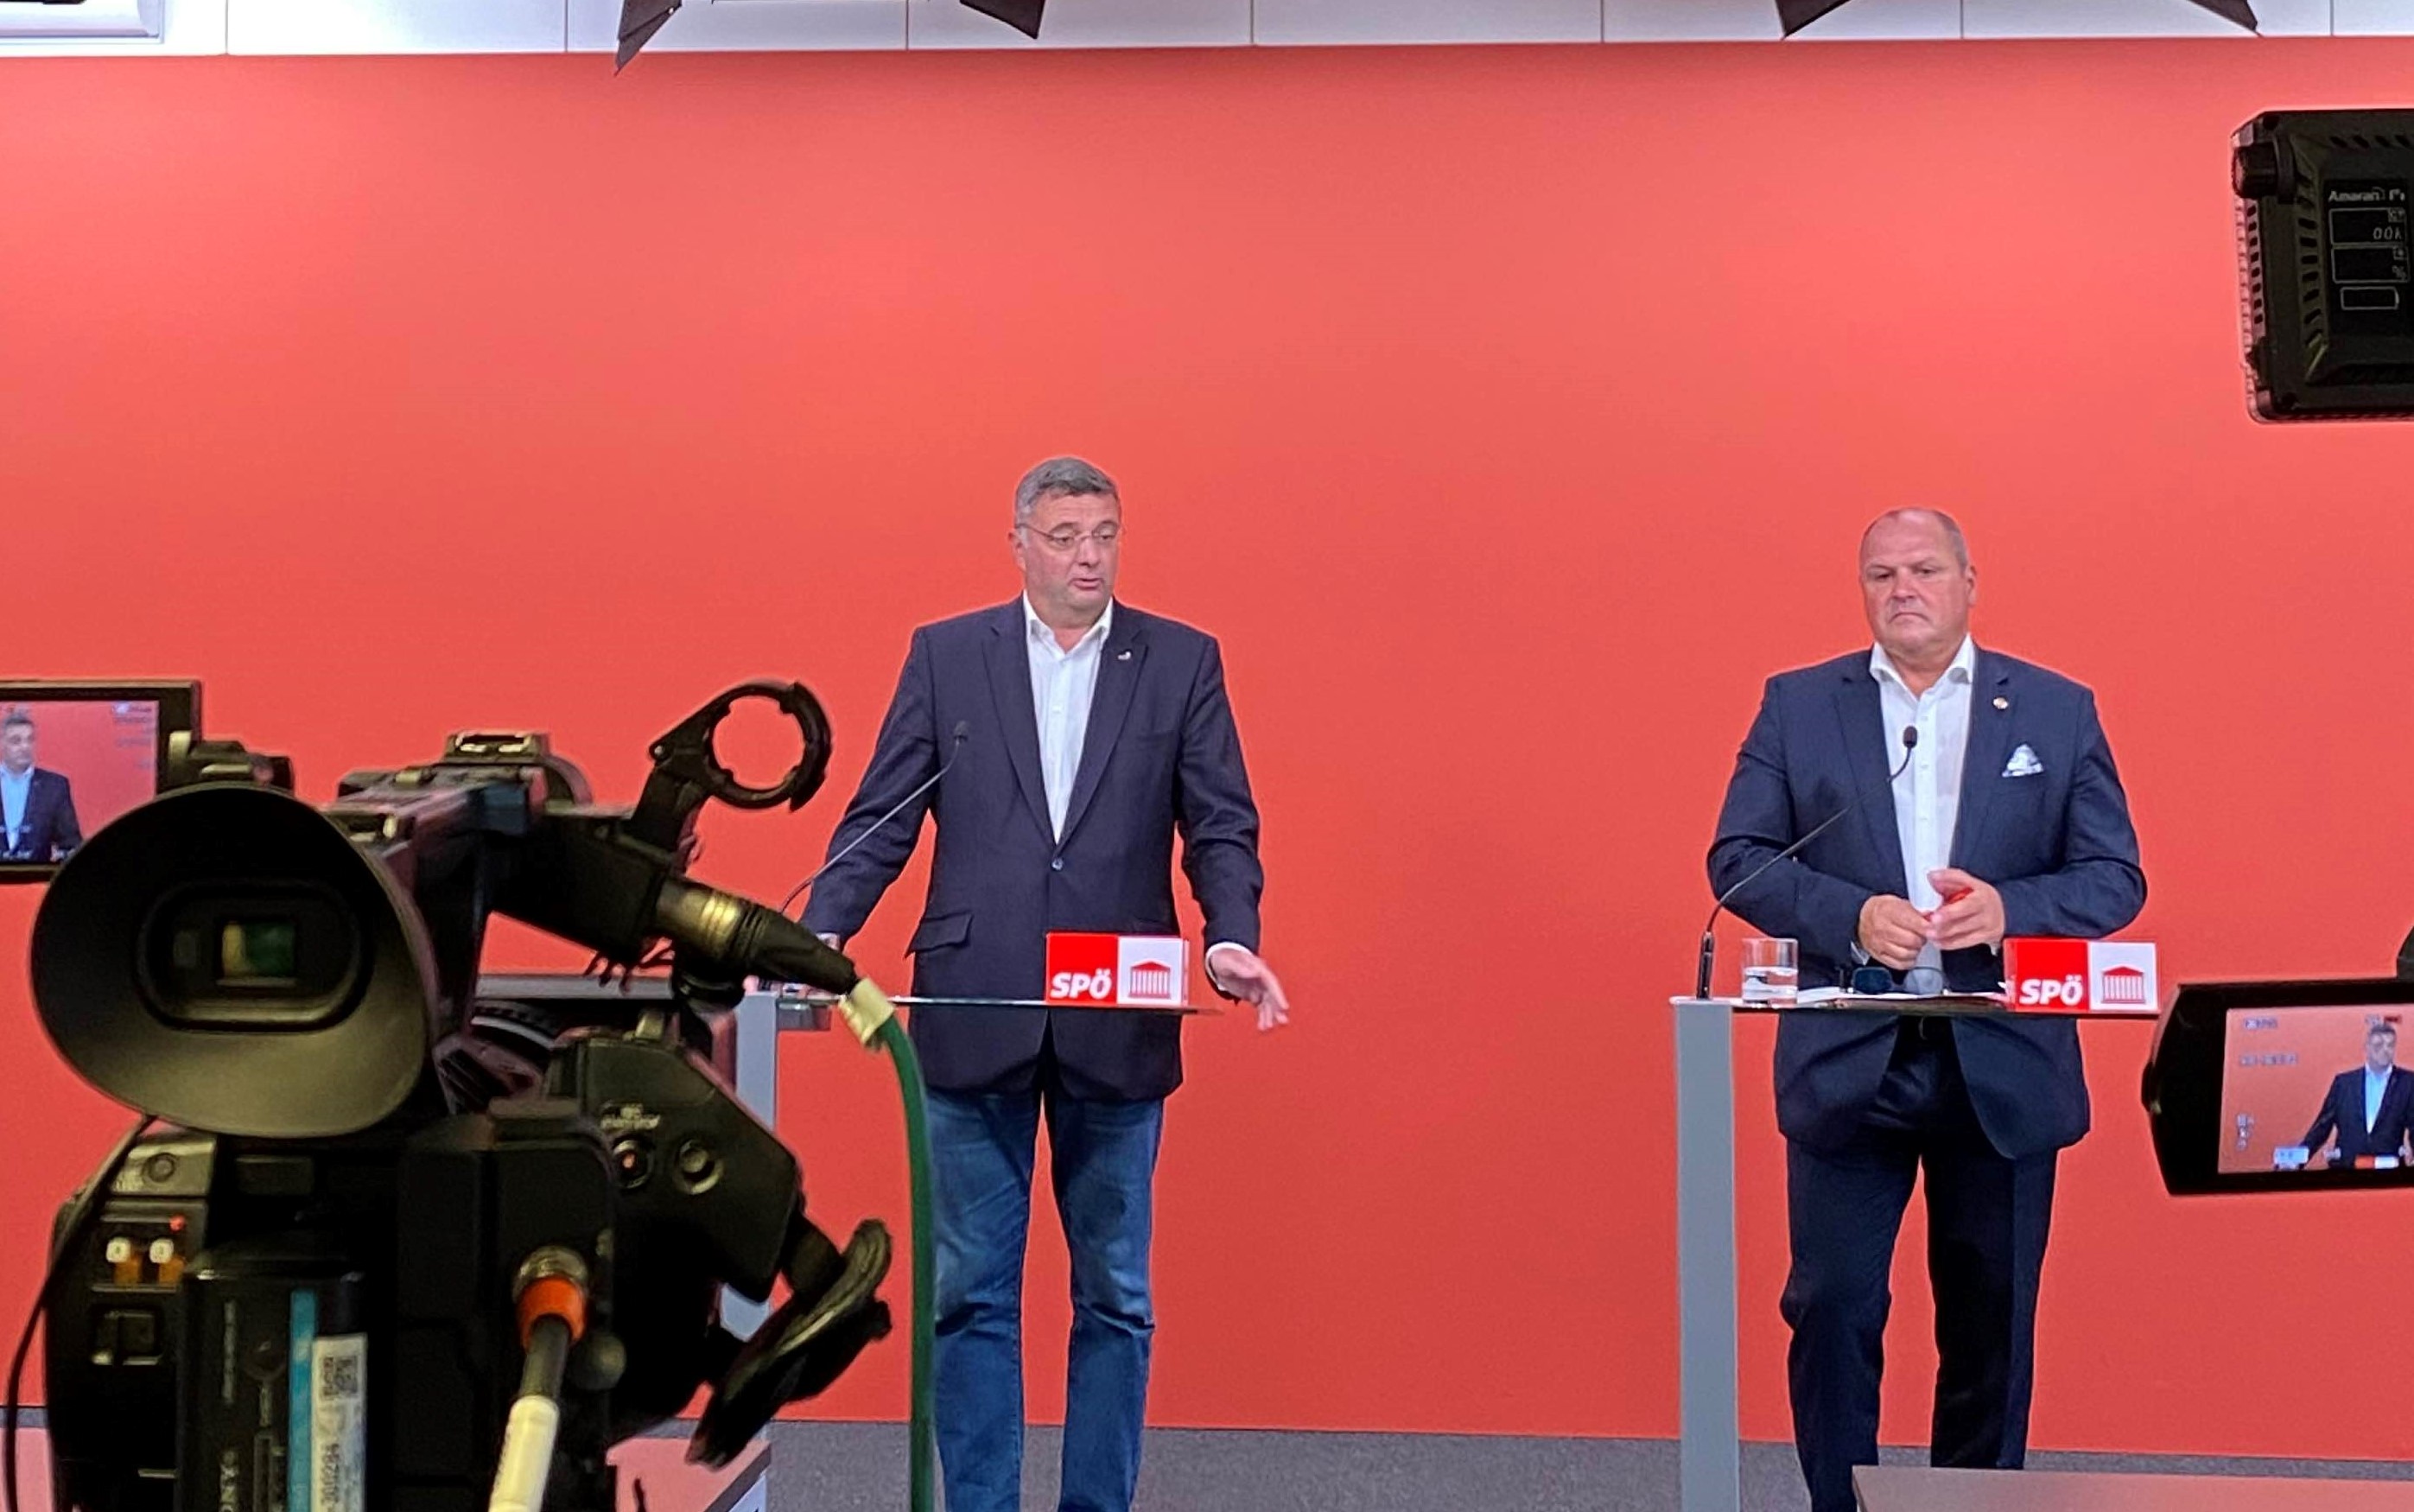 SPÖ-Schroll: „Grüne spielen völlig verantwortungslos mit Angst der Menschen und agieren faktenbefreit“